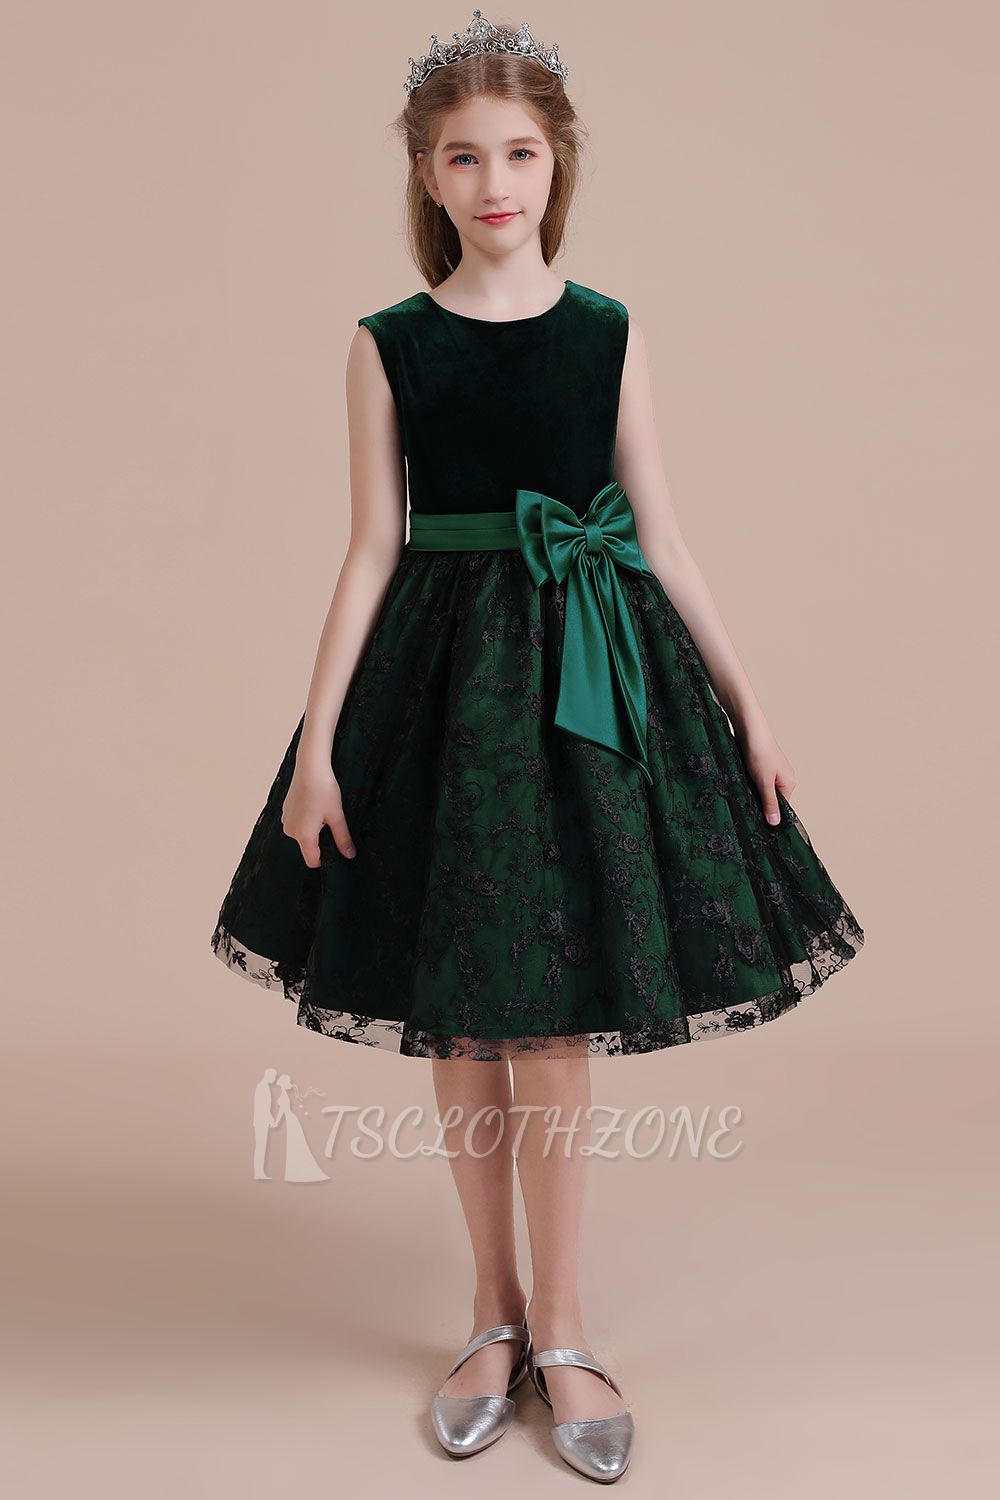 Autumn Knee Length Flower Girl Dress | Lace Velvet A-line Little Girls Pegeant Dress Online